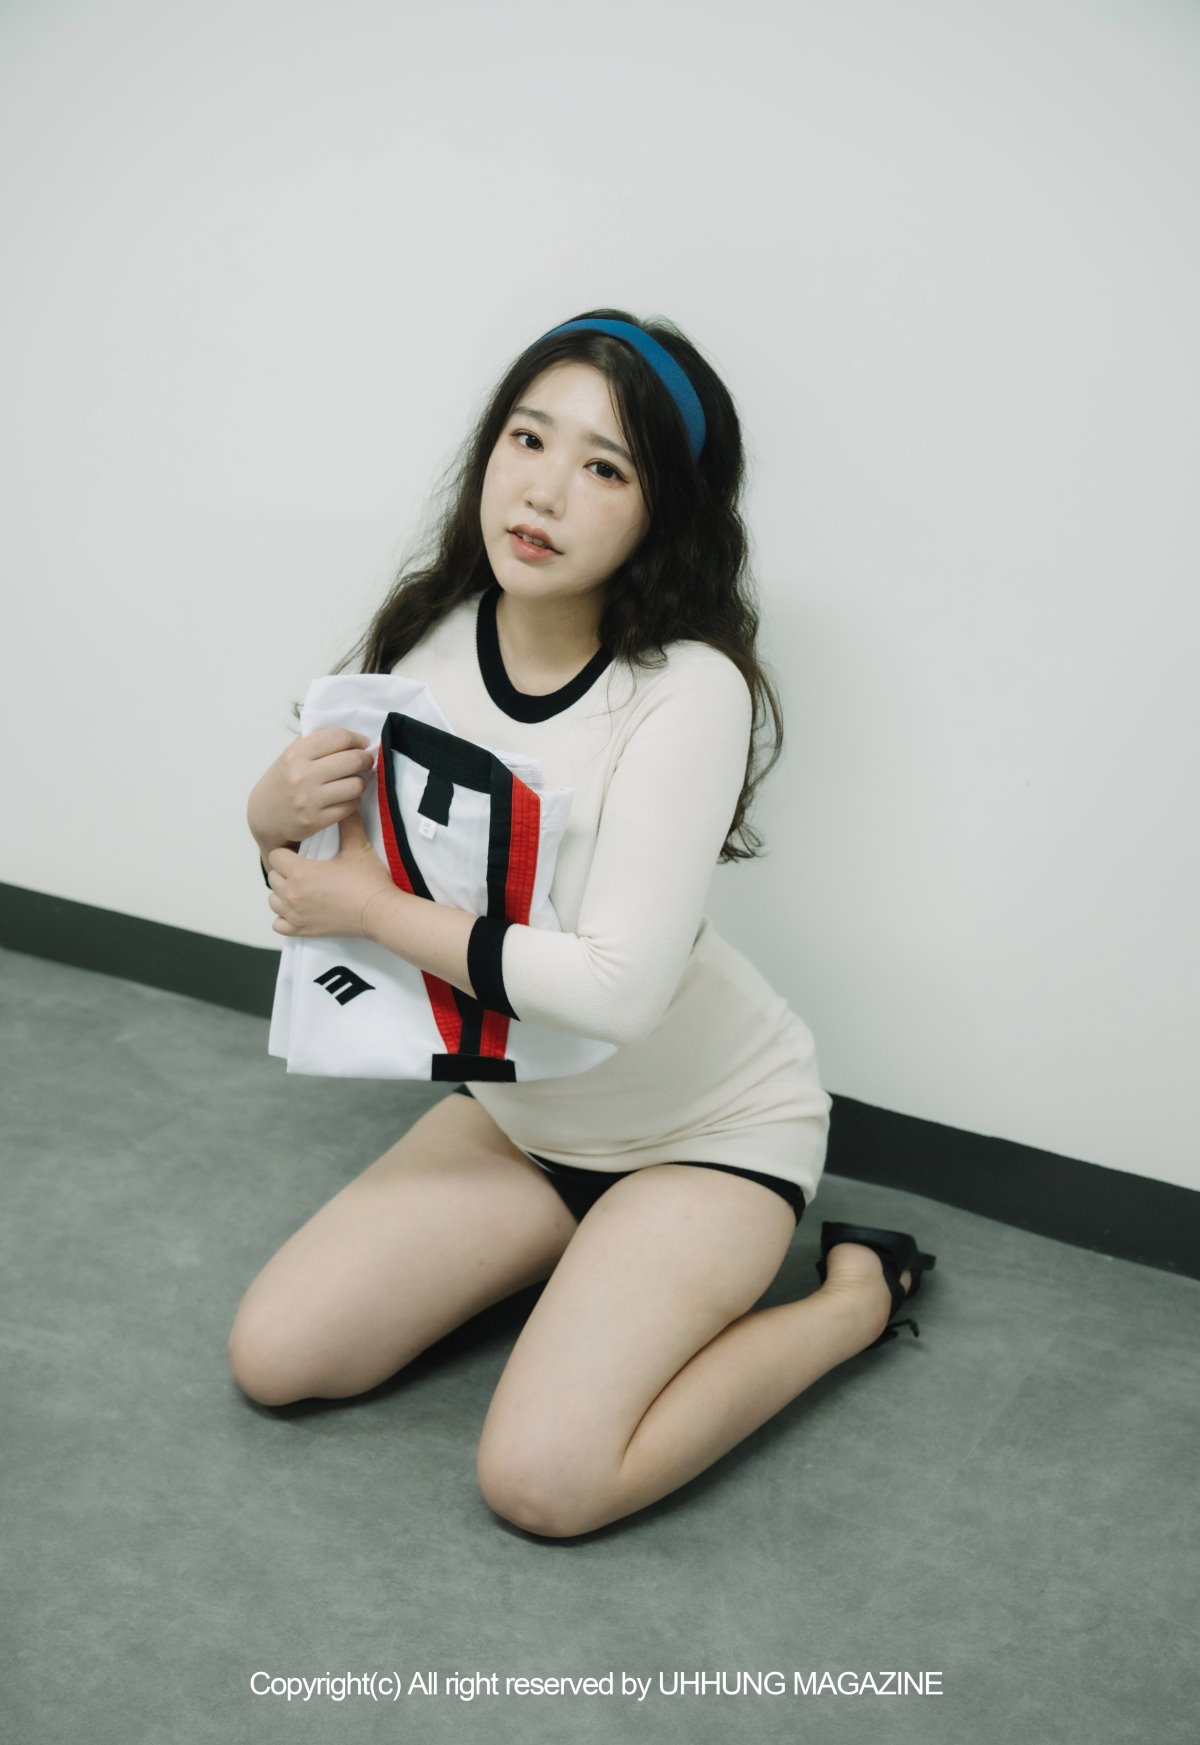 UHHUNG MAGAZINE Jenn Vol 1 Taekwondo Part1 0006 9845850551.jpg